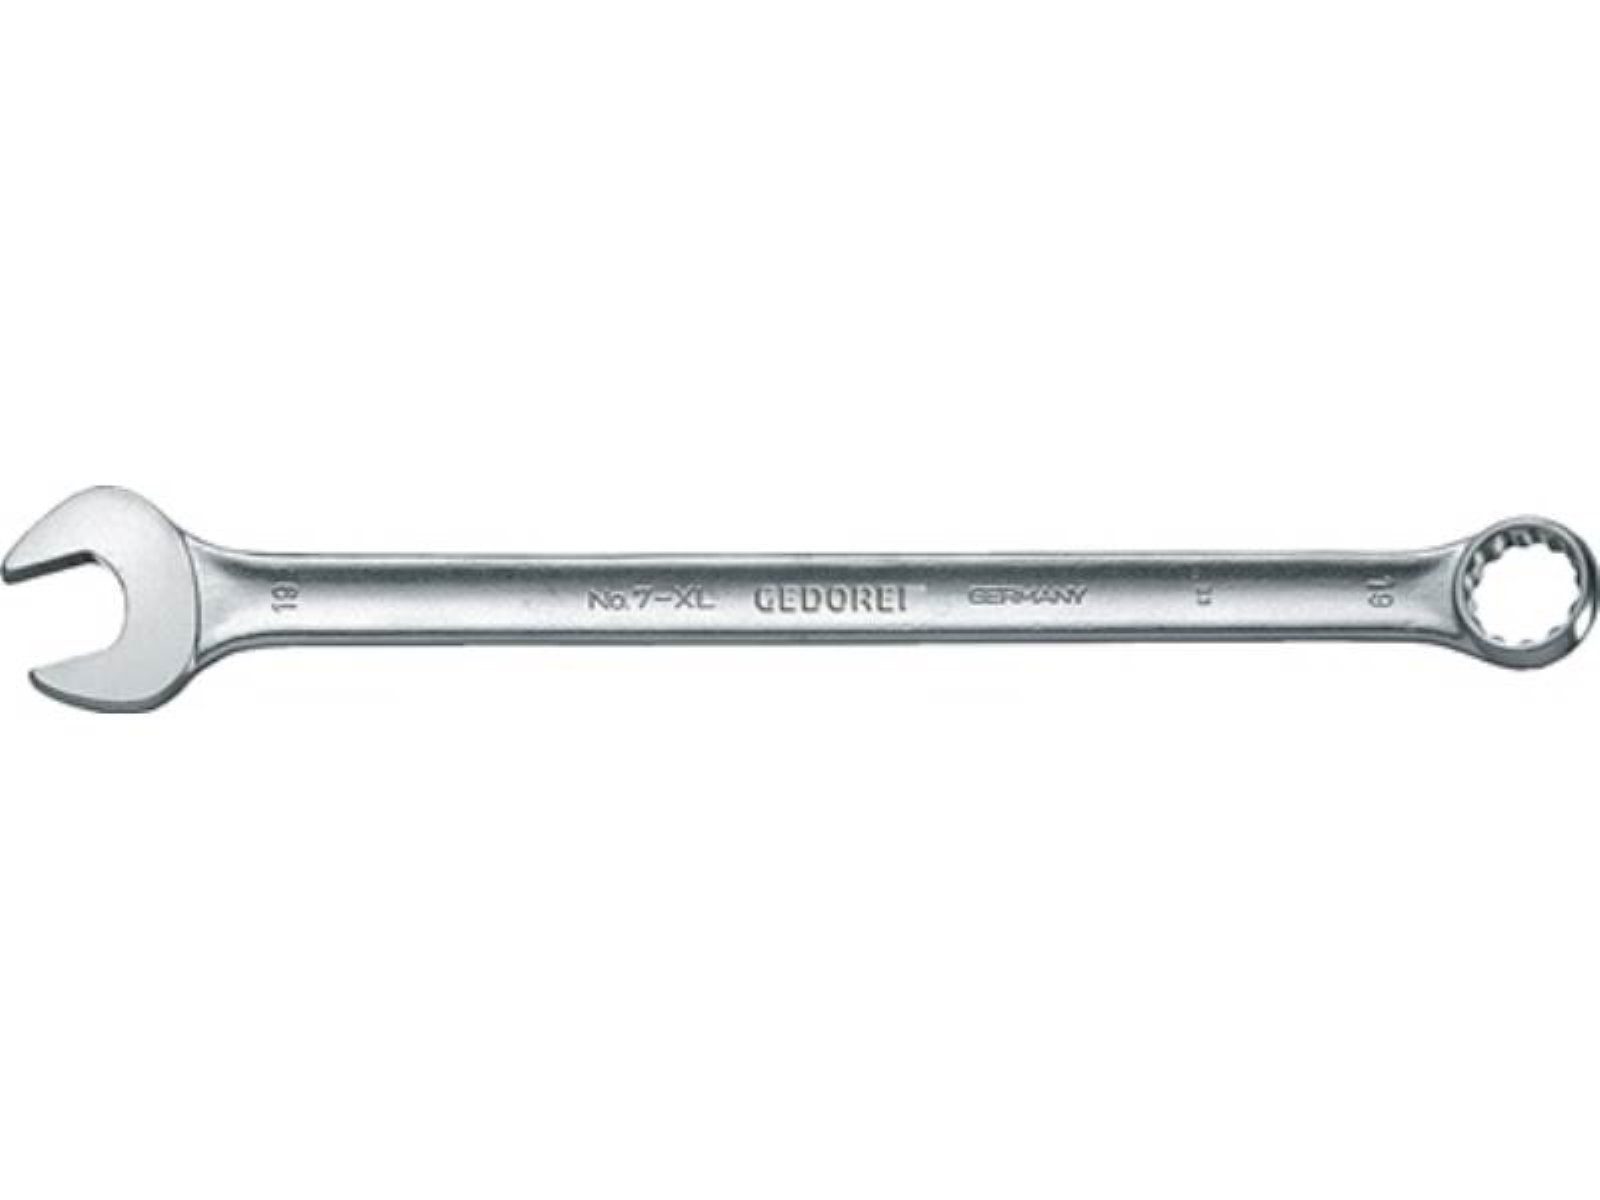 Gedore Maulschlüssel Ringmaulschlüssel 7 XL SW 8mm L.170mm Form A ext.lang CV-Stahl GEDORE | Maulschlüssel